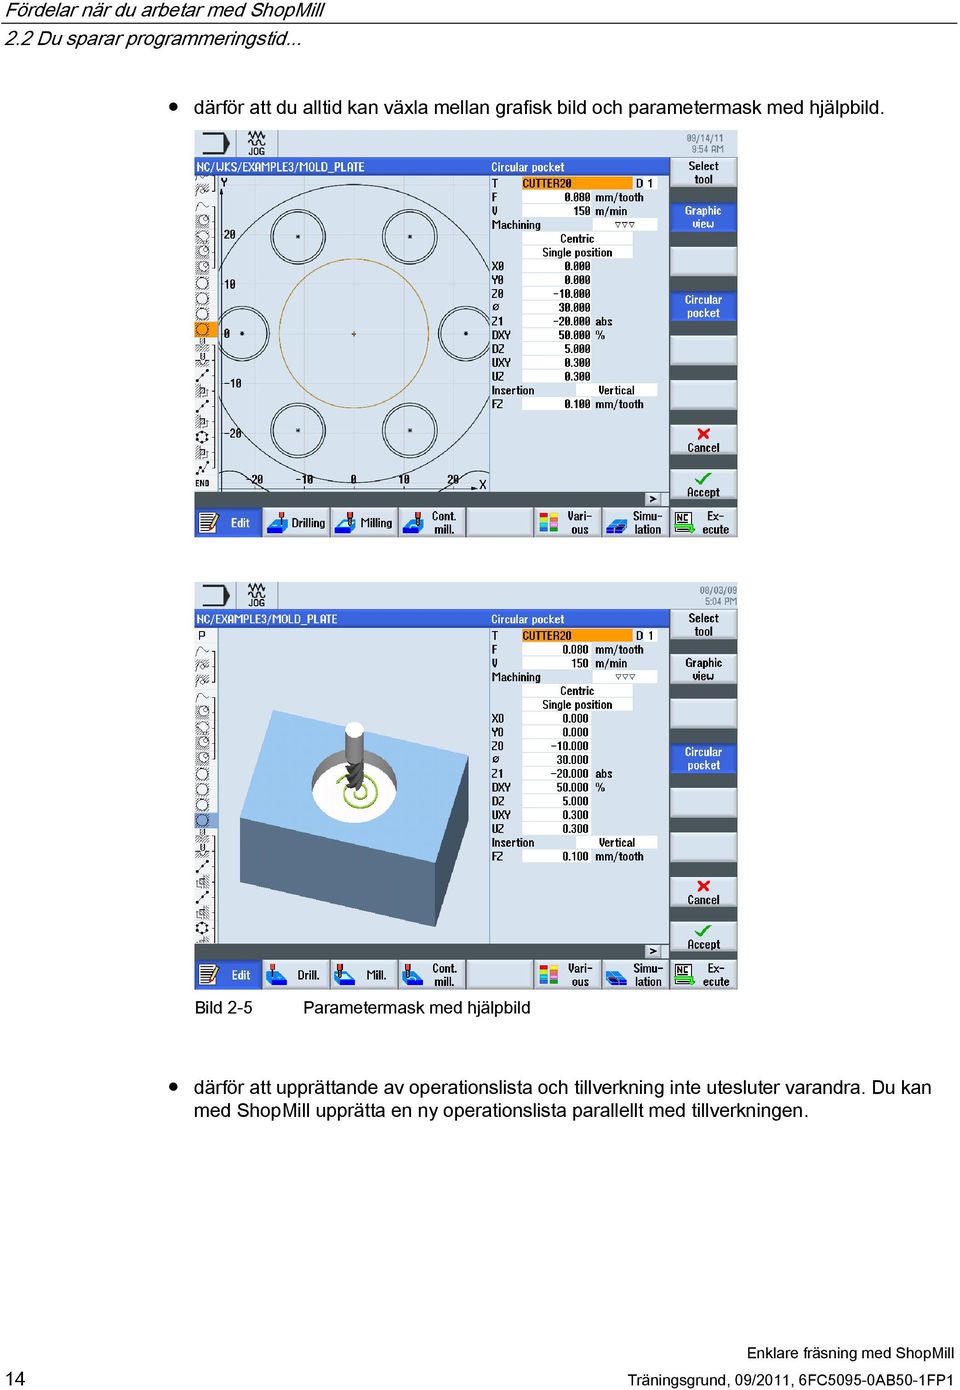 Bild 2-5 Parametermask med hjälpbild därför att upprättande av operationslista och tillverkning inte